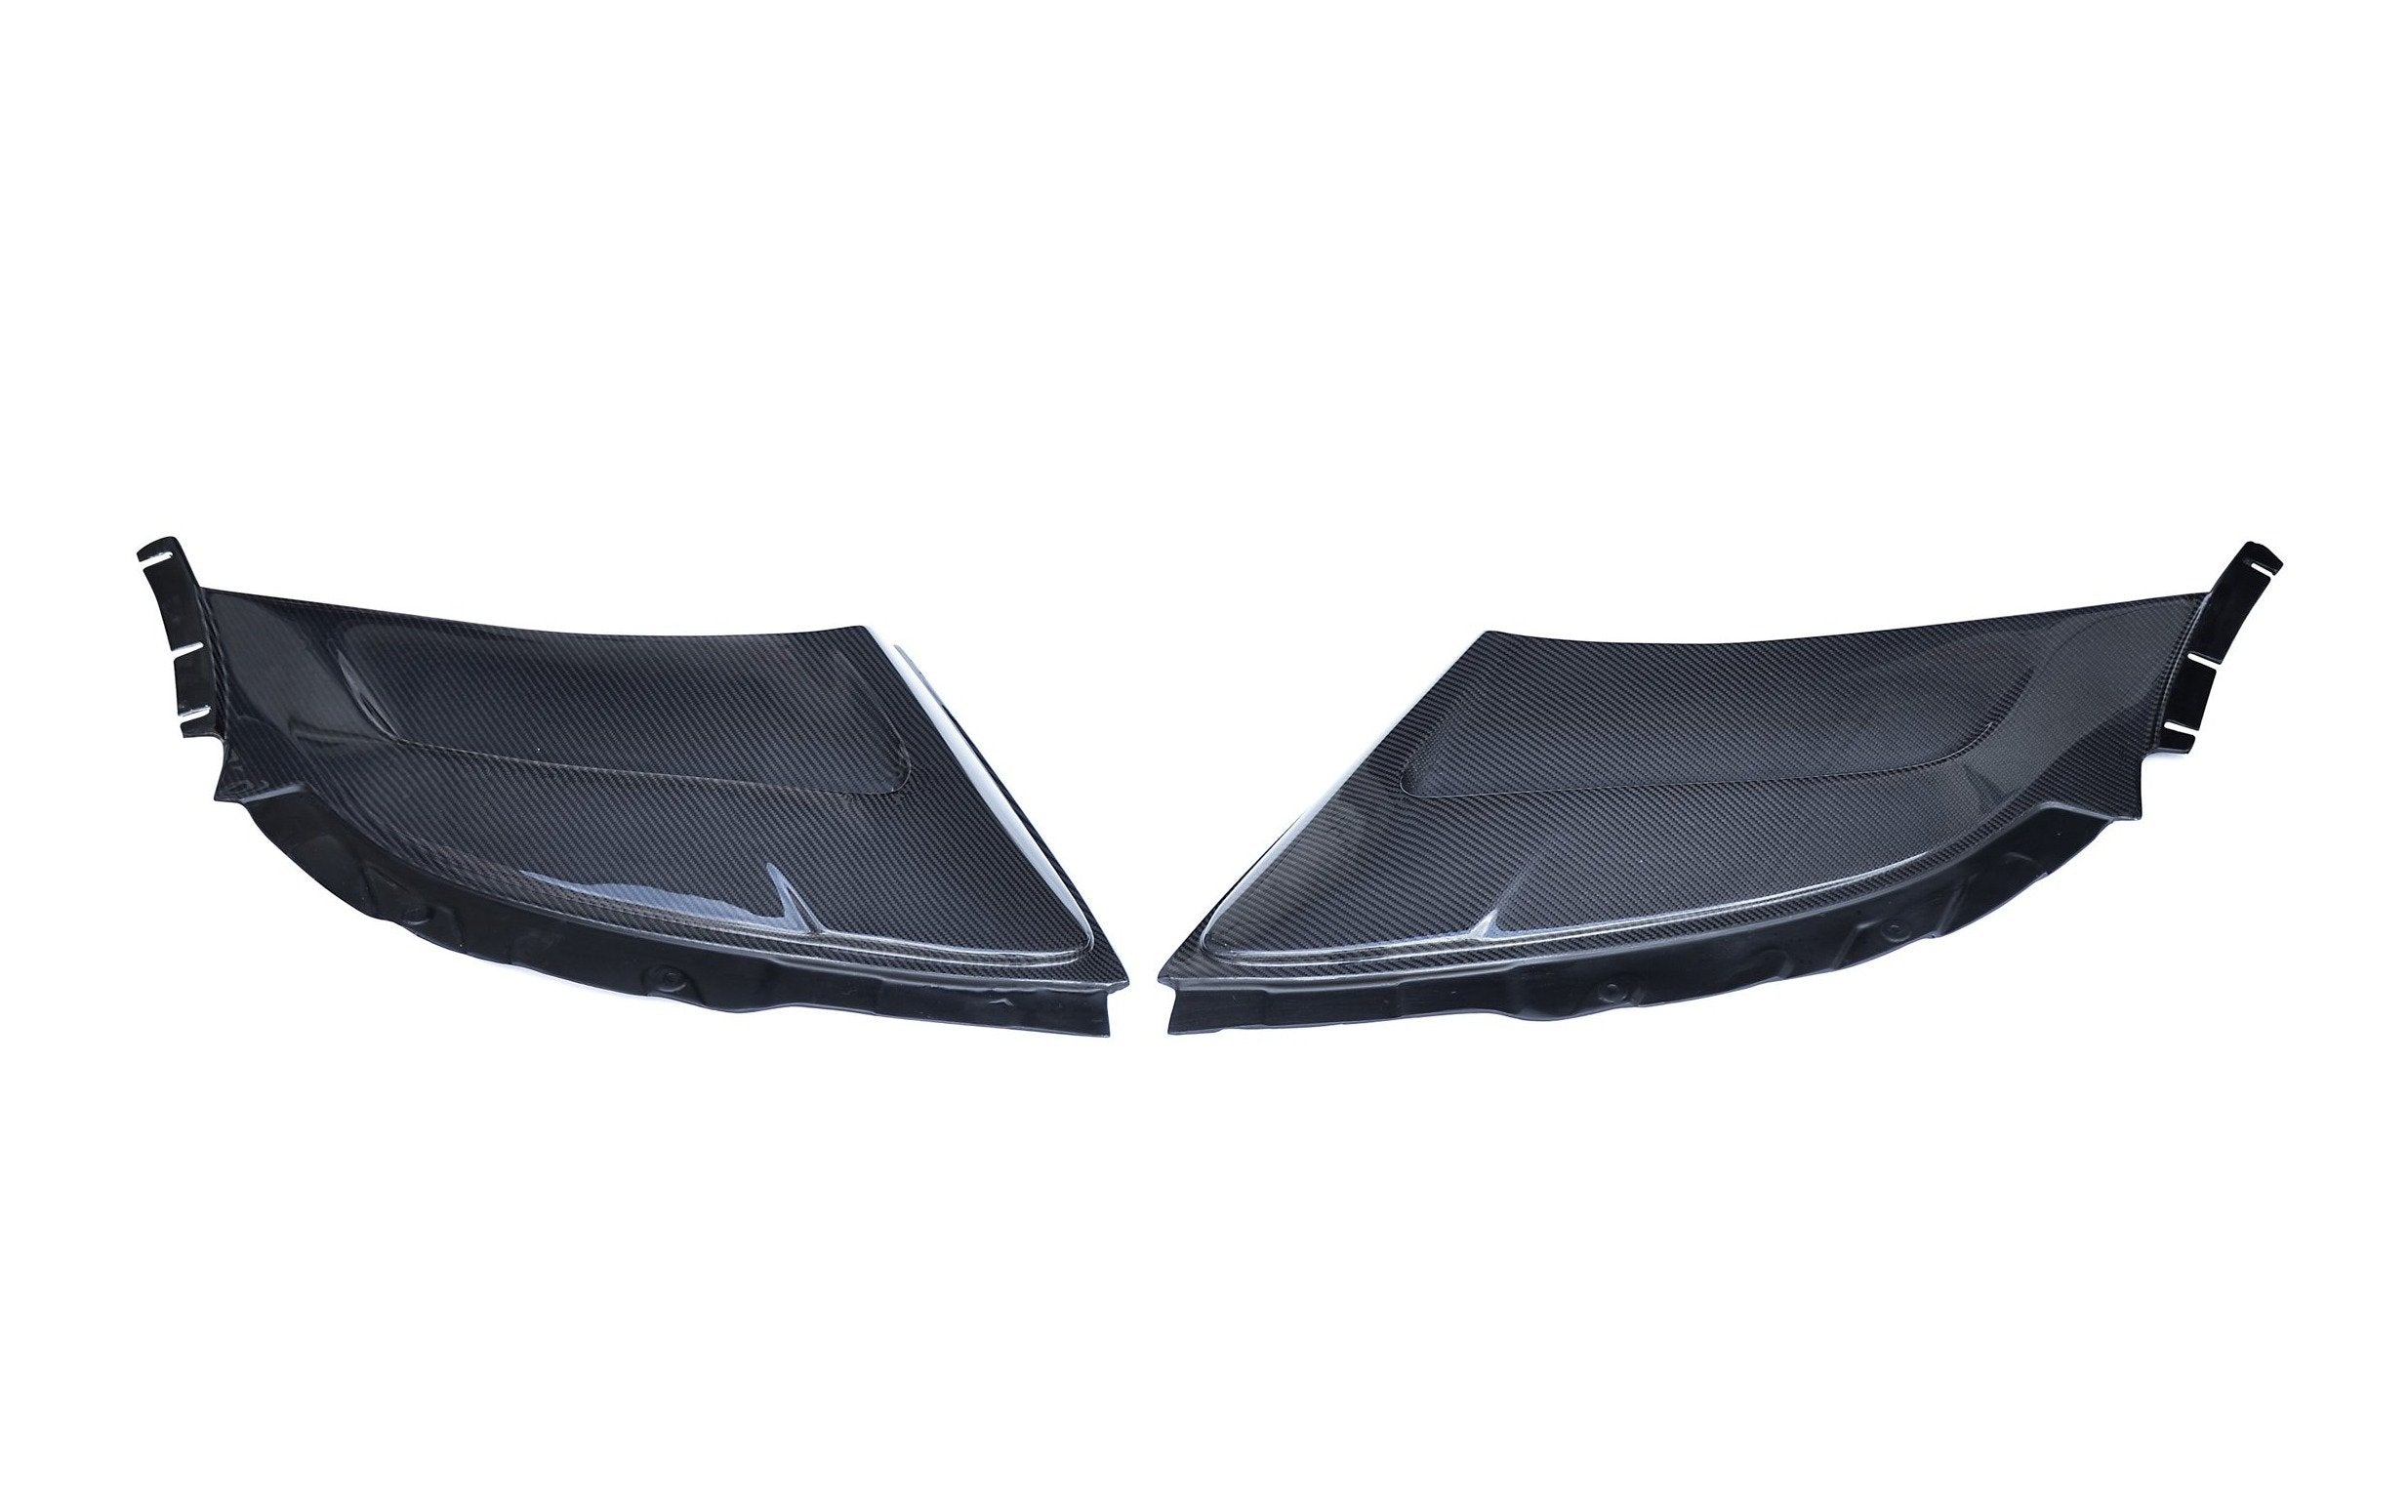 CMST Carbon Fiber Rear Fender Side vents for McLaren 650S